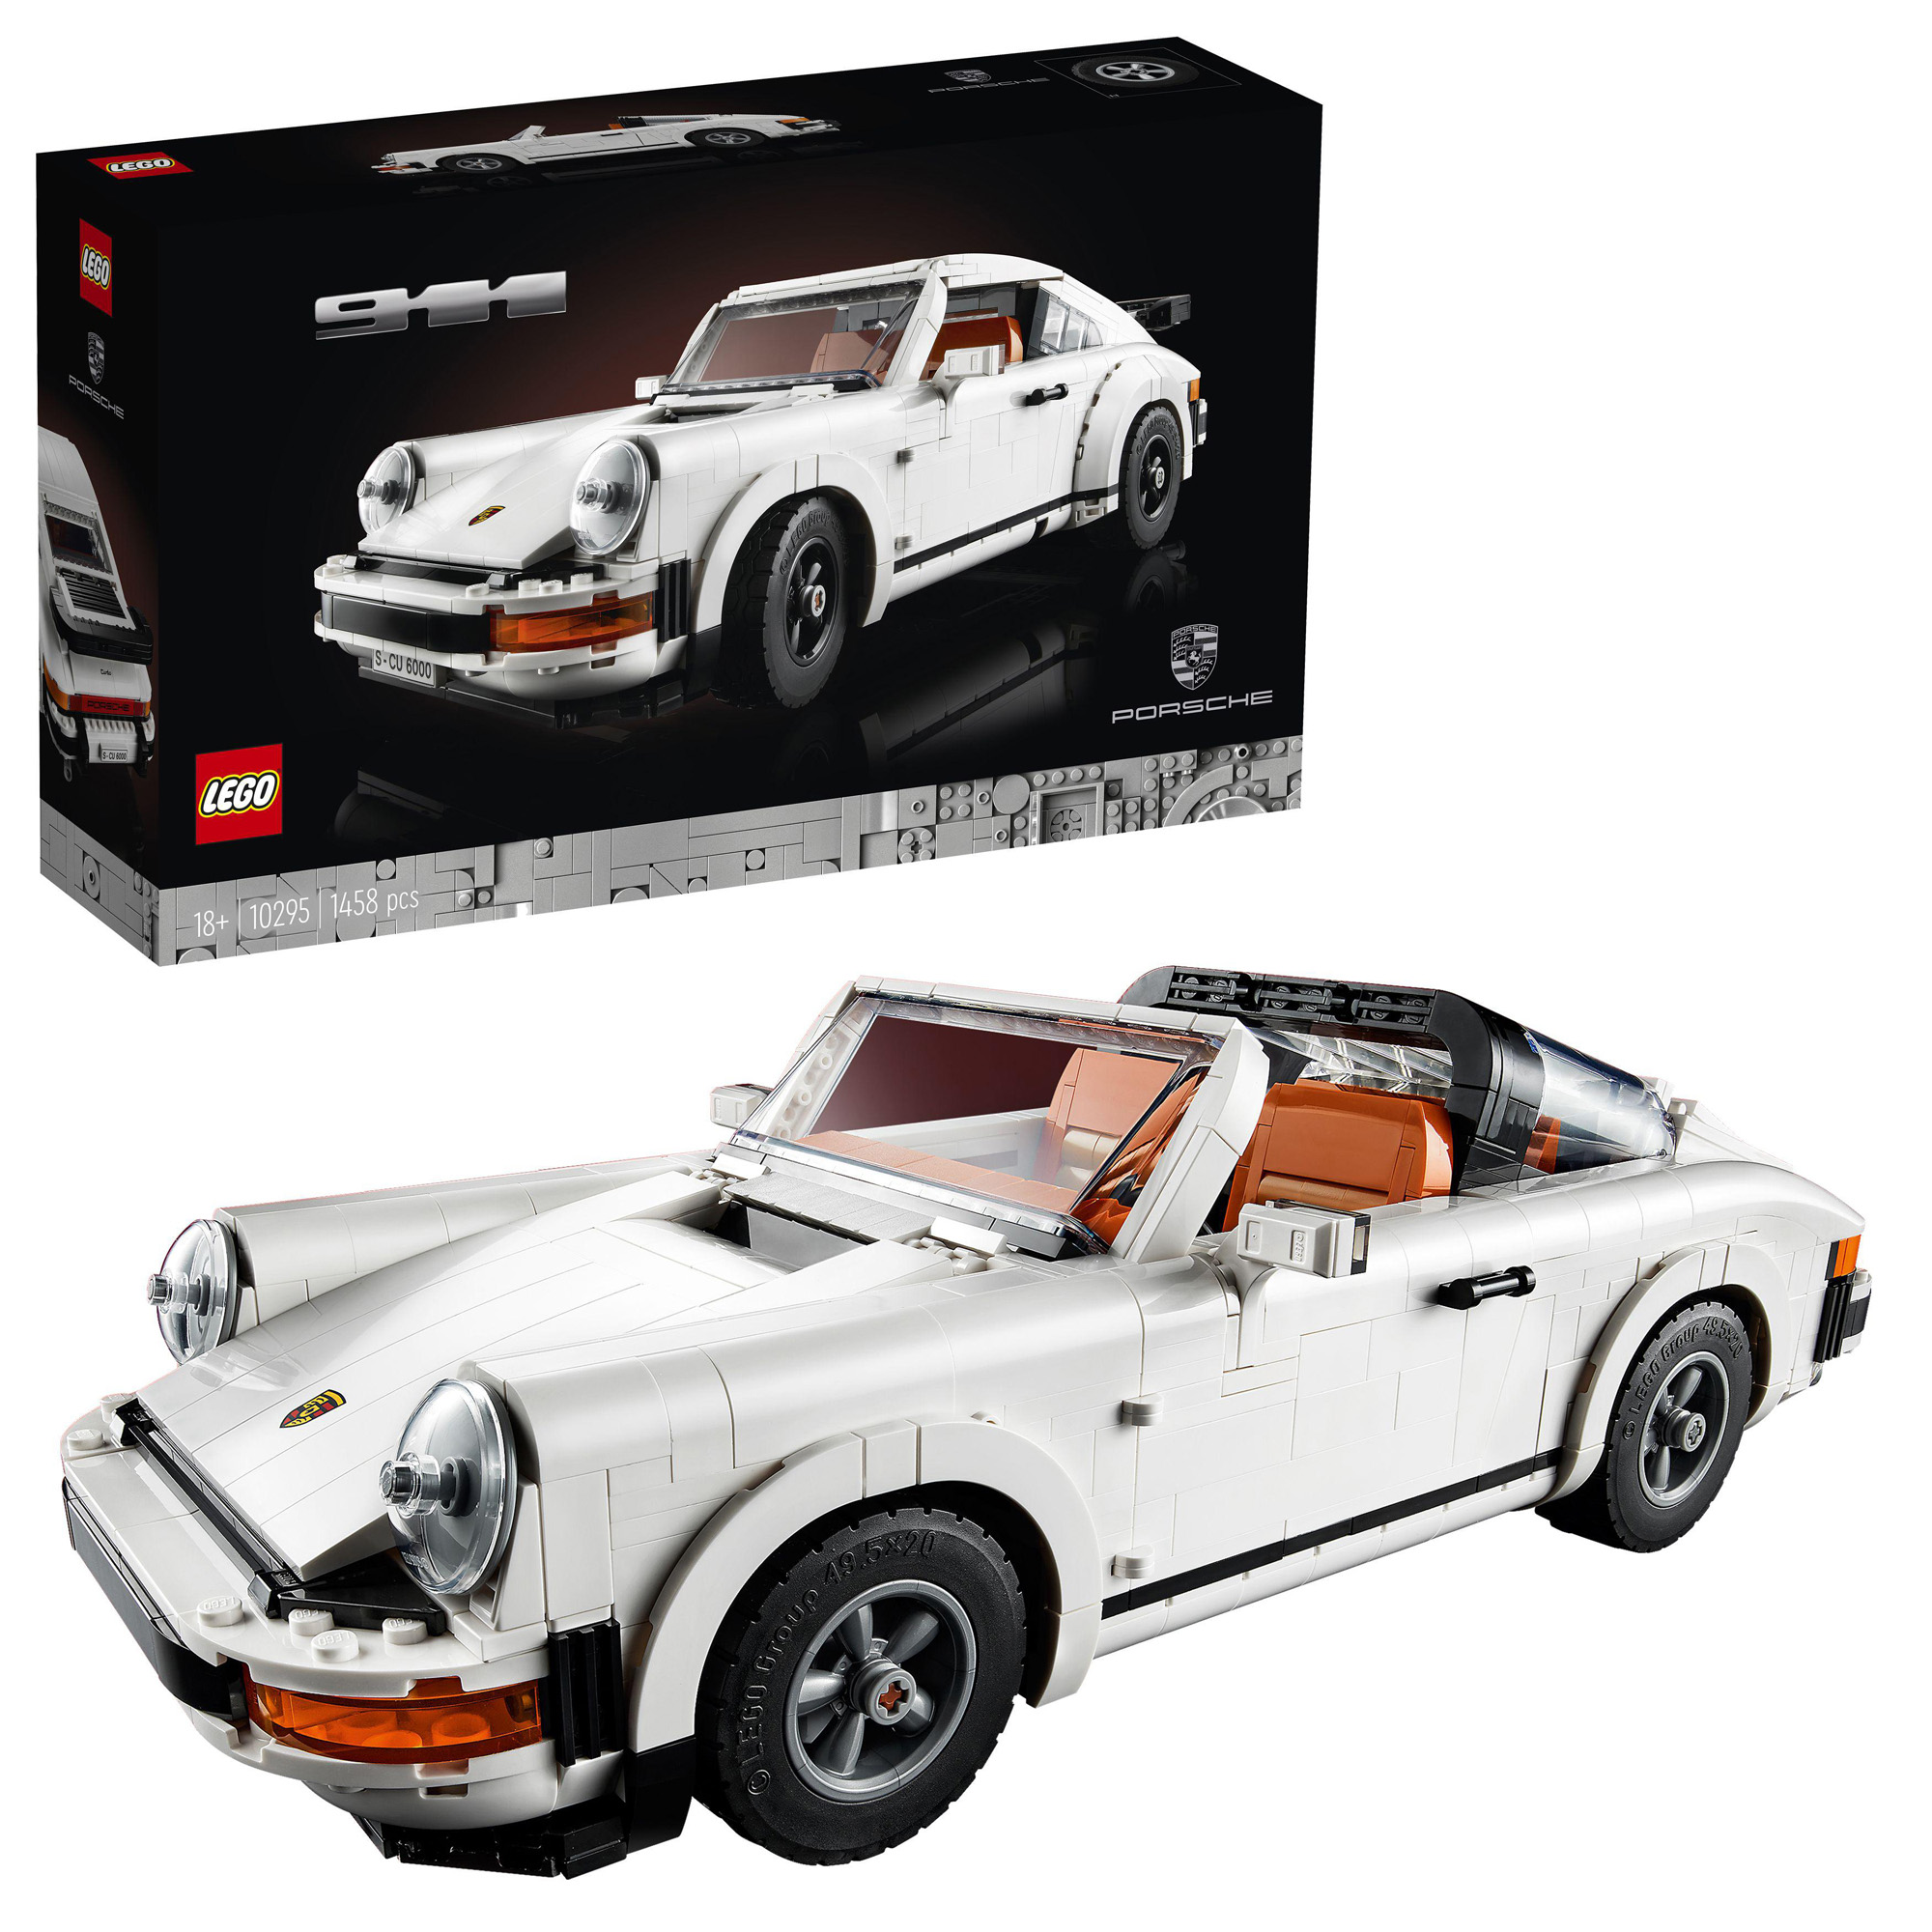 LEGO 10295 Creator Expert Porsche 911 - LEGO